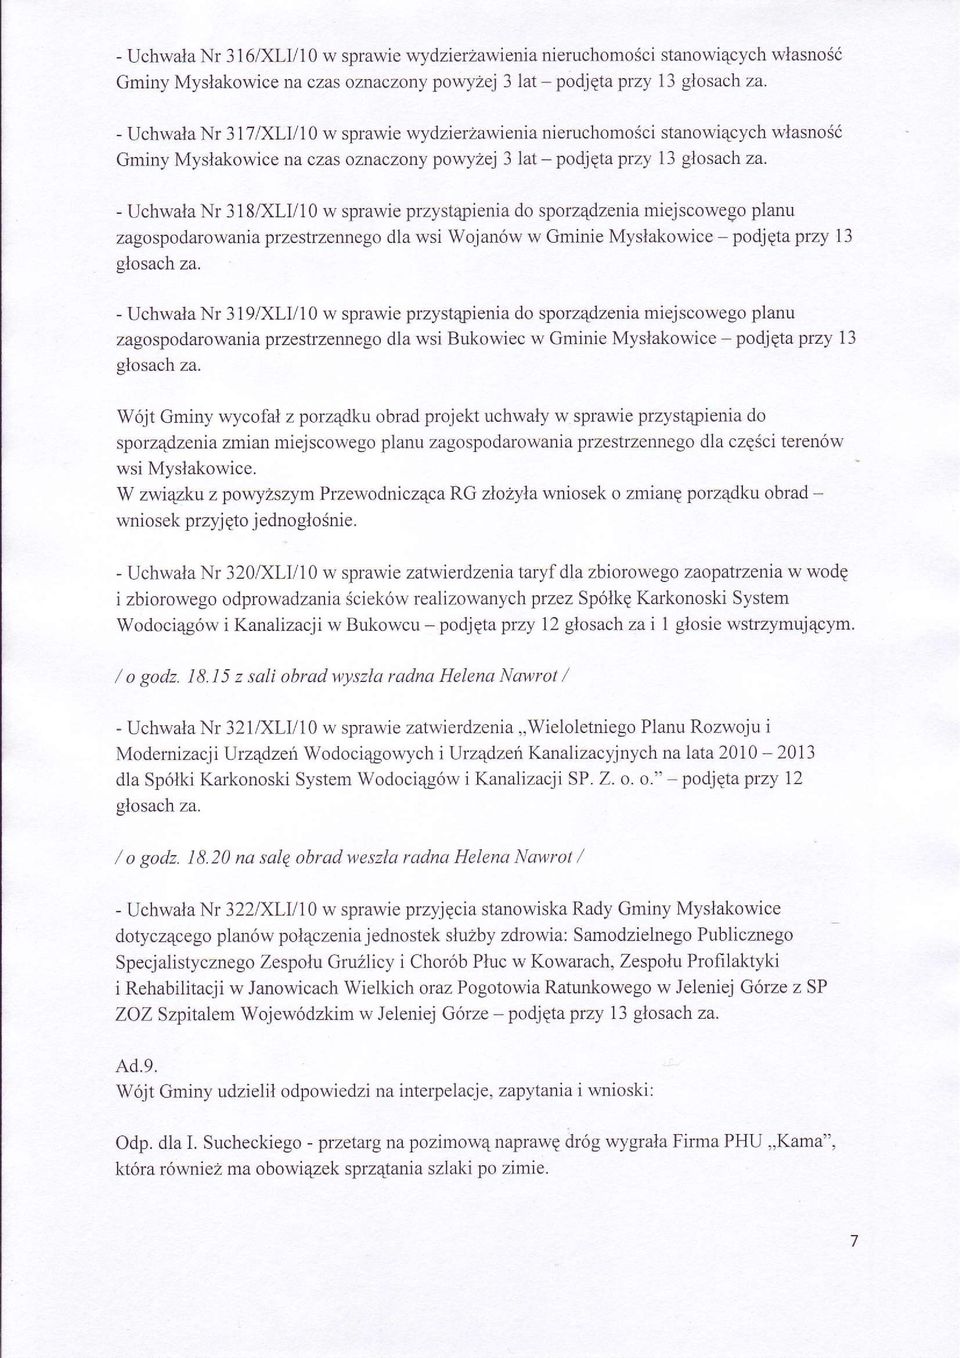 - Uchwala Nr 318,0OV10 w sprawie przyst4 rienia do sporz4dzenia miejscowego planu zagospodarowania przestrzennego dla wsi Wojanów w Gminie Myslakowice - podjqta przy 13 glosach za.